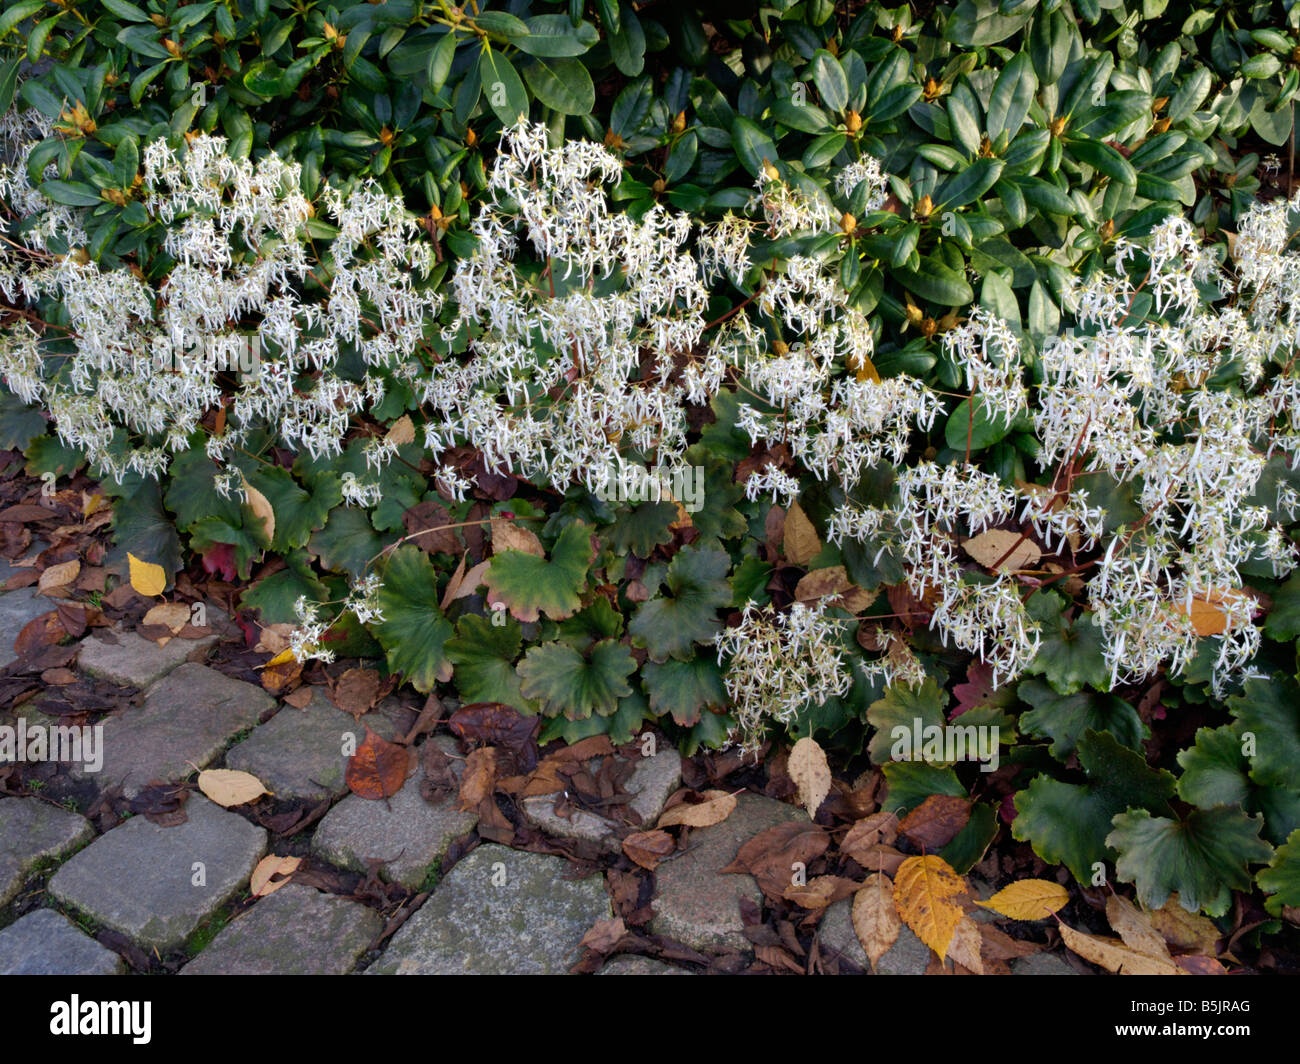 Saxifrage (Saxifraga cortusifolia) Stock Photo